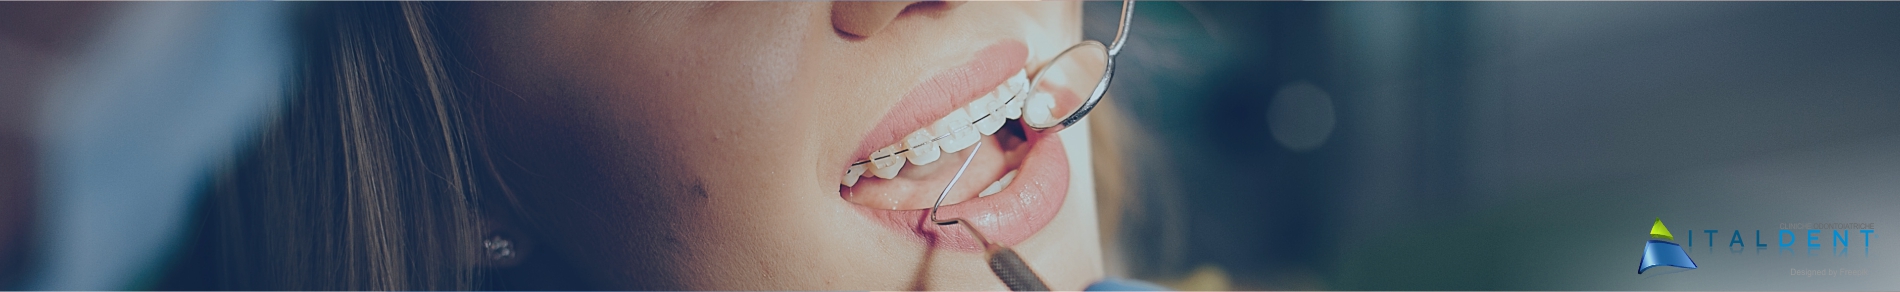 Clinica Odontoiatrica Italdent, Sbiancamento dei denti naturali